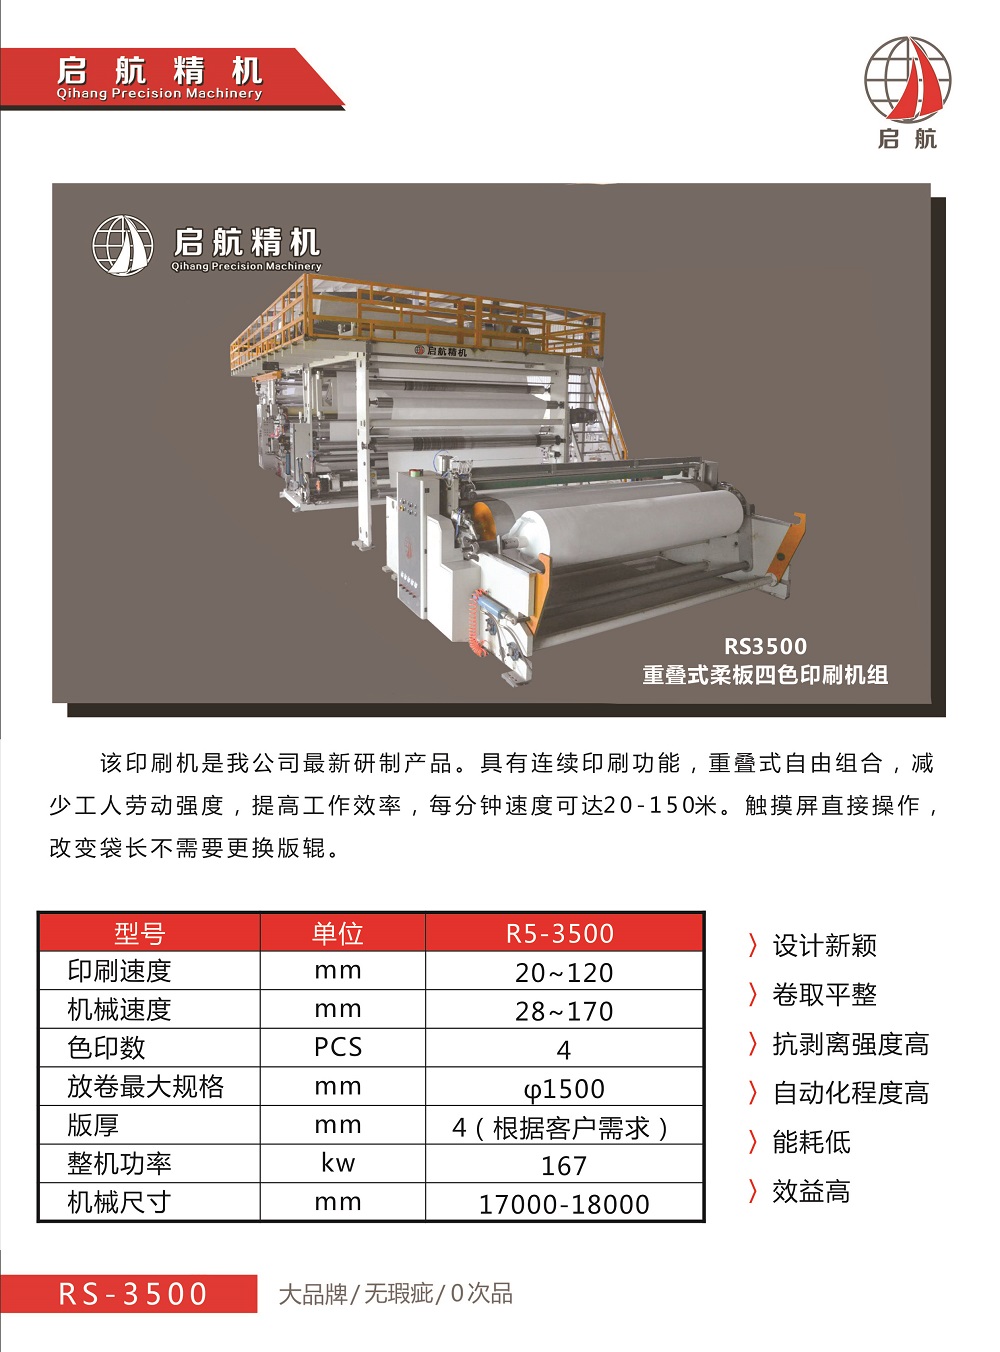 广东汕头厂家直销重叠式柔板四色印刷机R3500